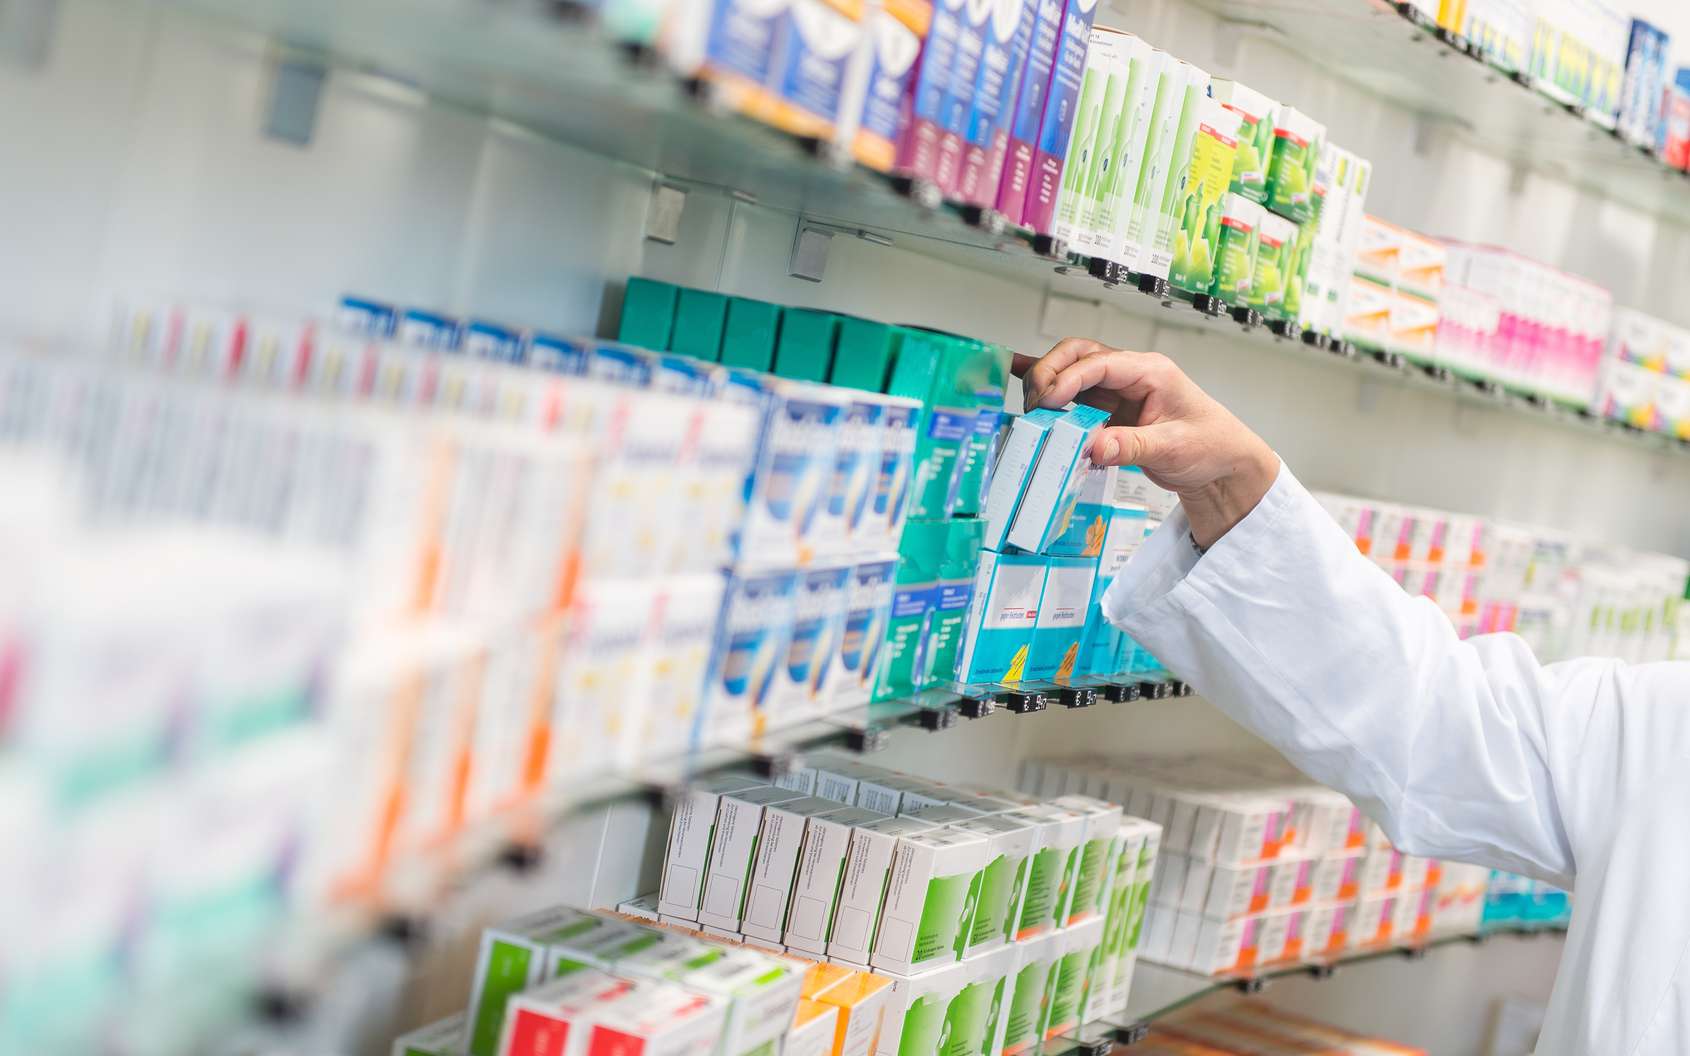 Le préparateur en pharmacie délivre des médicaments sur ordonnance ou non aux clients qu’il reçoit à son comptoir. © benjaminnolte, Fotolia.